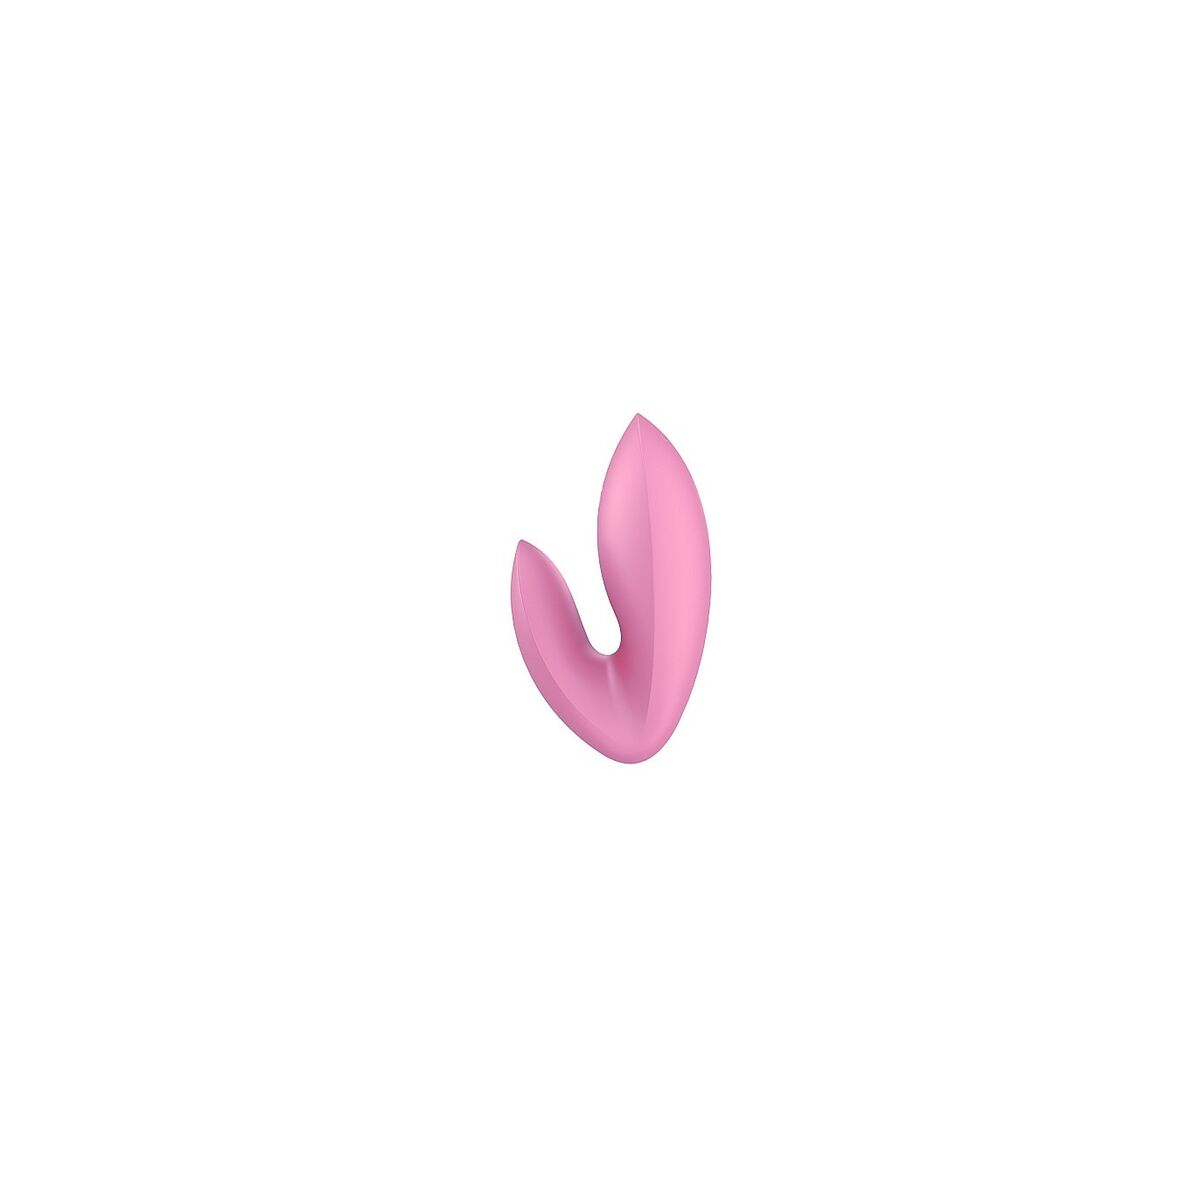 Osta tuote Vibraattori Satisfyer verkkokaupastamme Korhone: Seksikauppa & Erotiikka 20% alennuksella koodilla VIIKONLOPPU